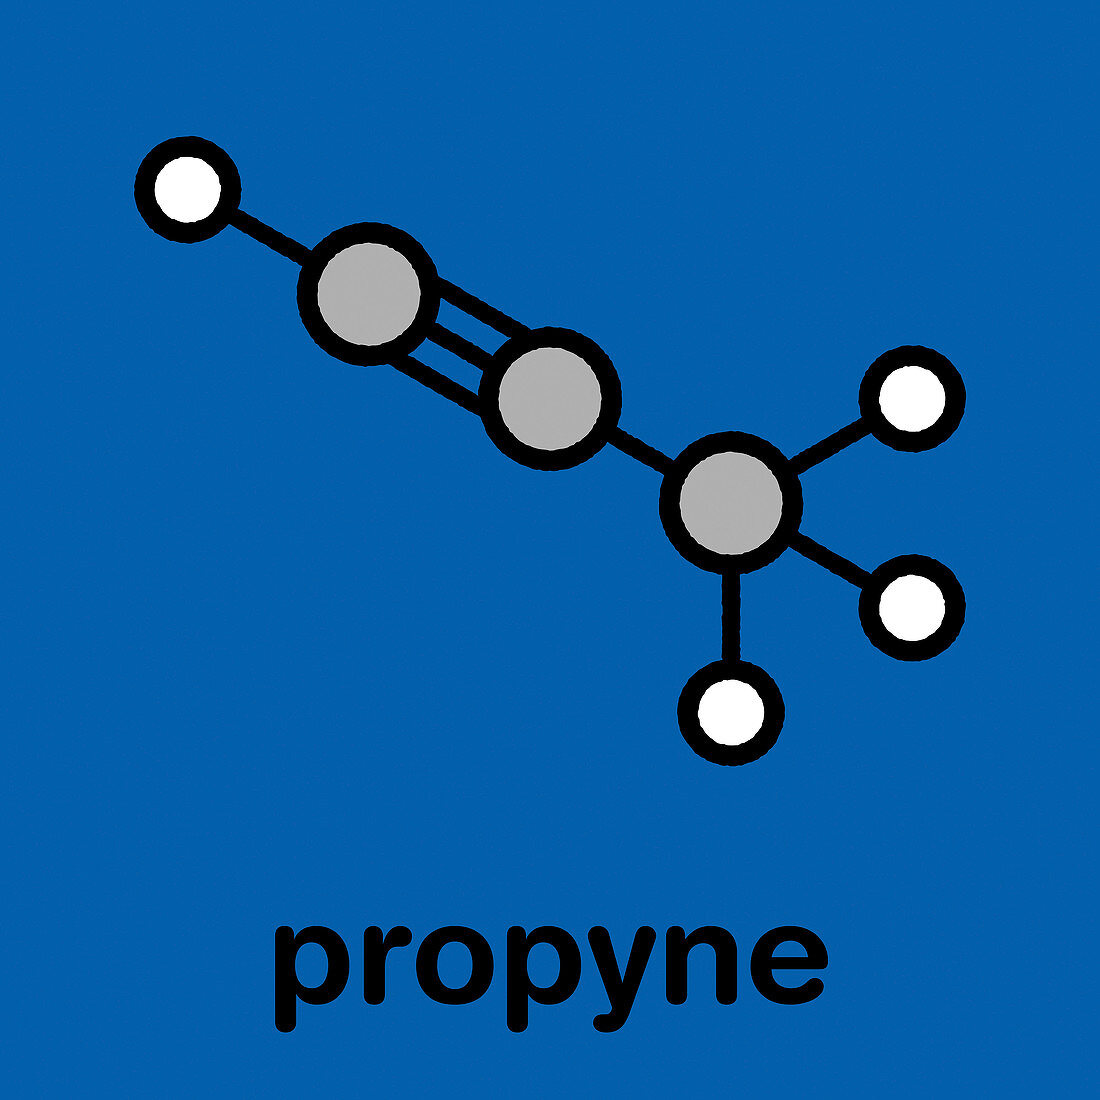 Propyne molecule